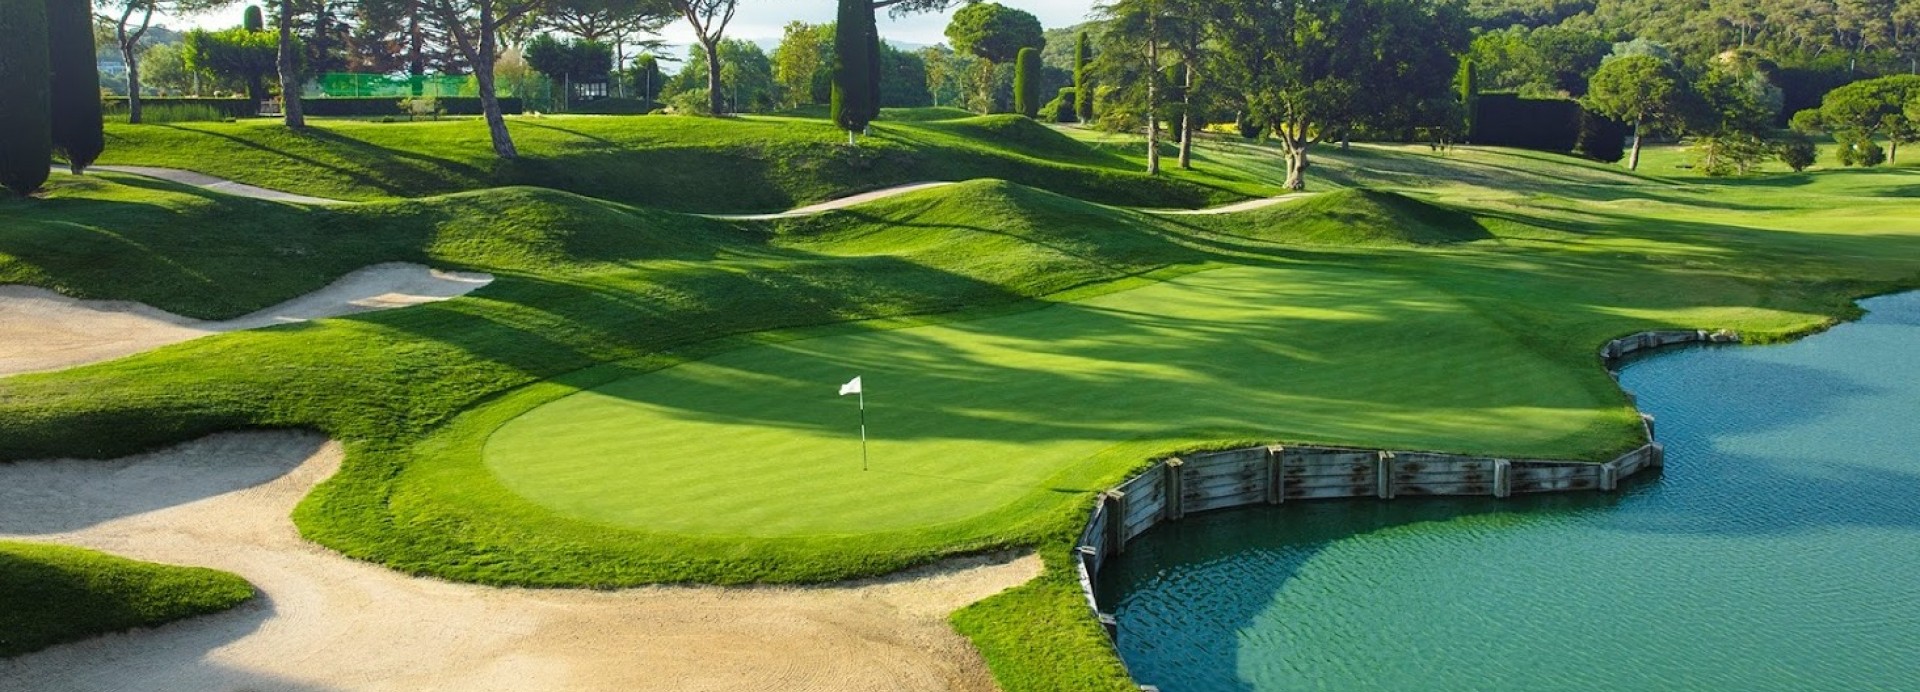 Club de Golf Vallromanes  | Golfové zájezdy, golfová dovolená, luxusní golf